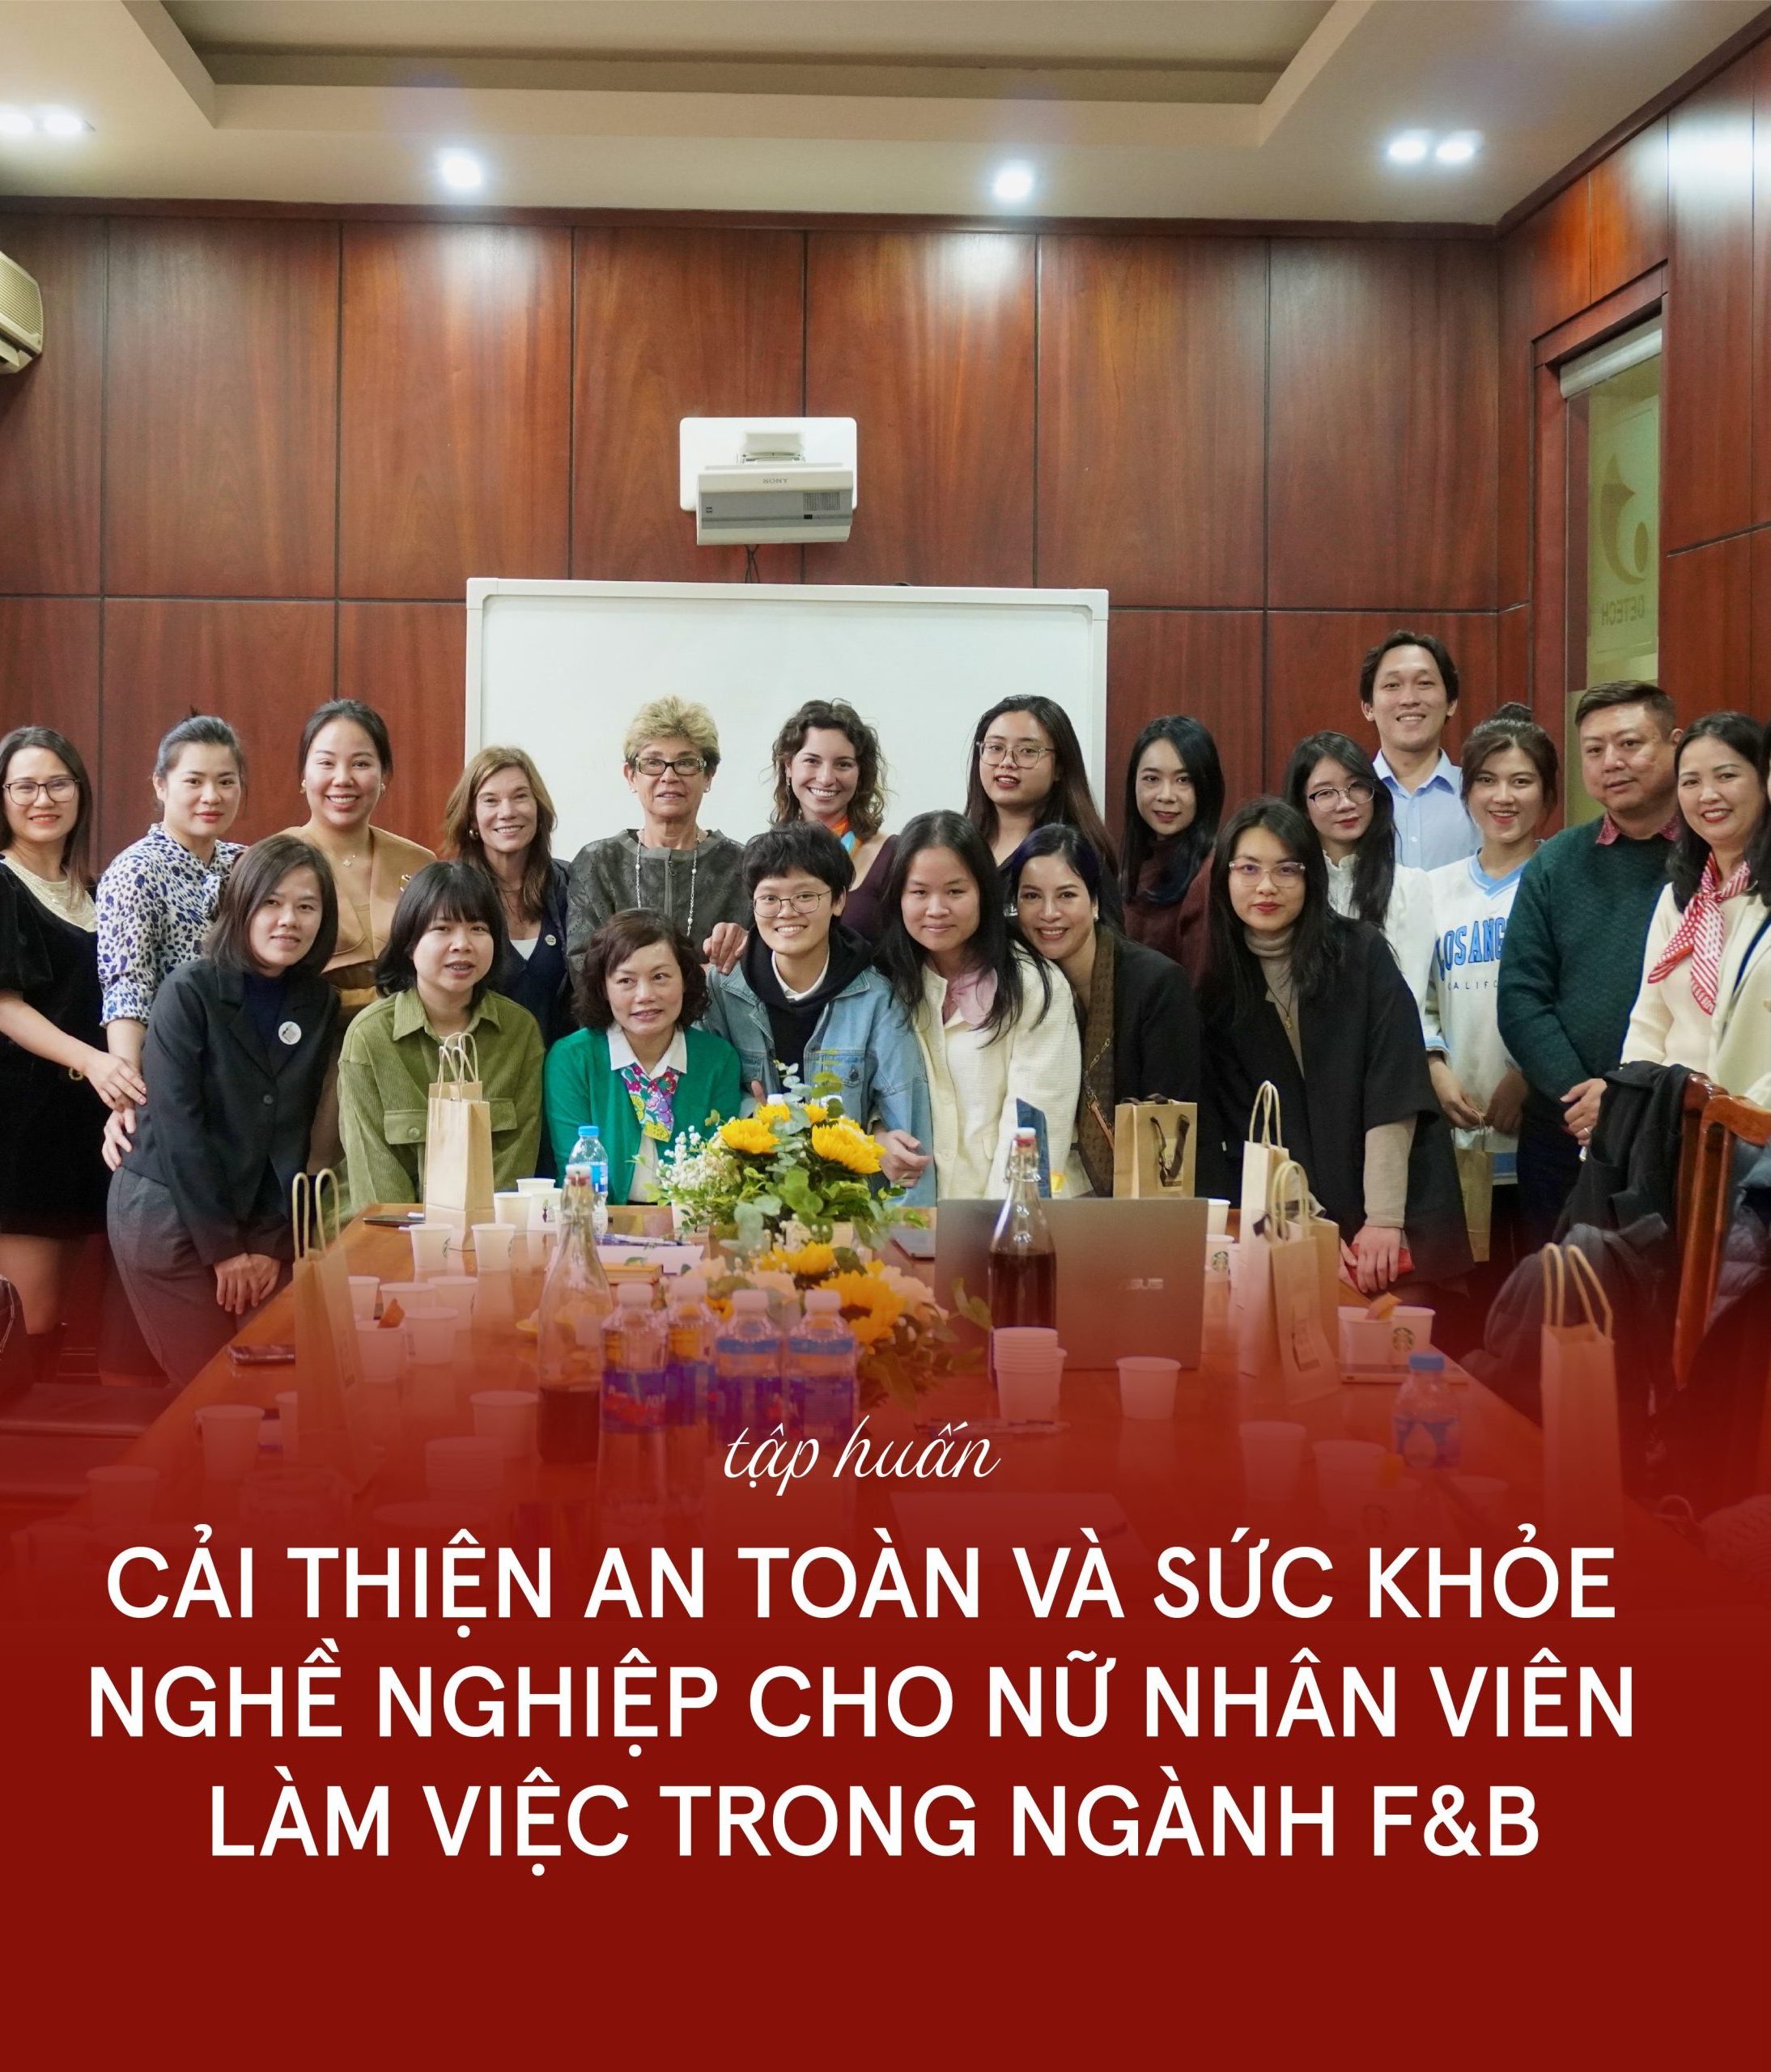 Tập huấn sơ bộ về Cải thiện an toàn và sức khỏe nghề nghiệp cho nữ nhân viên làm việc trong ngành F&B trong khuôn khổ hợp tác giữa The Starbucks Foundation, Vision Zero Fund (ILO) và IWCA Việt Nam